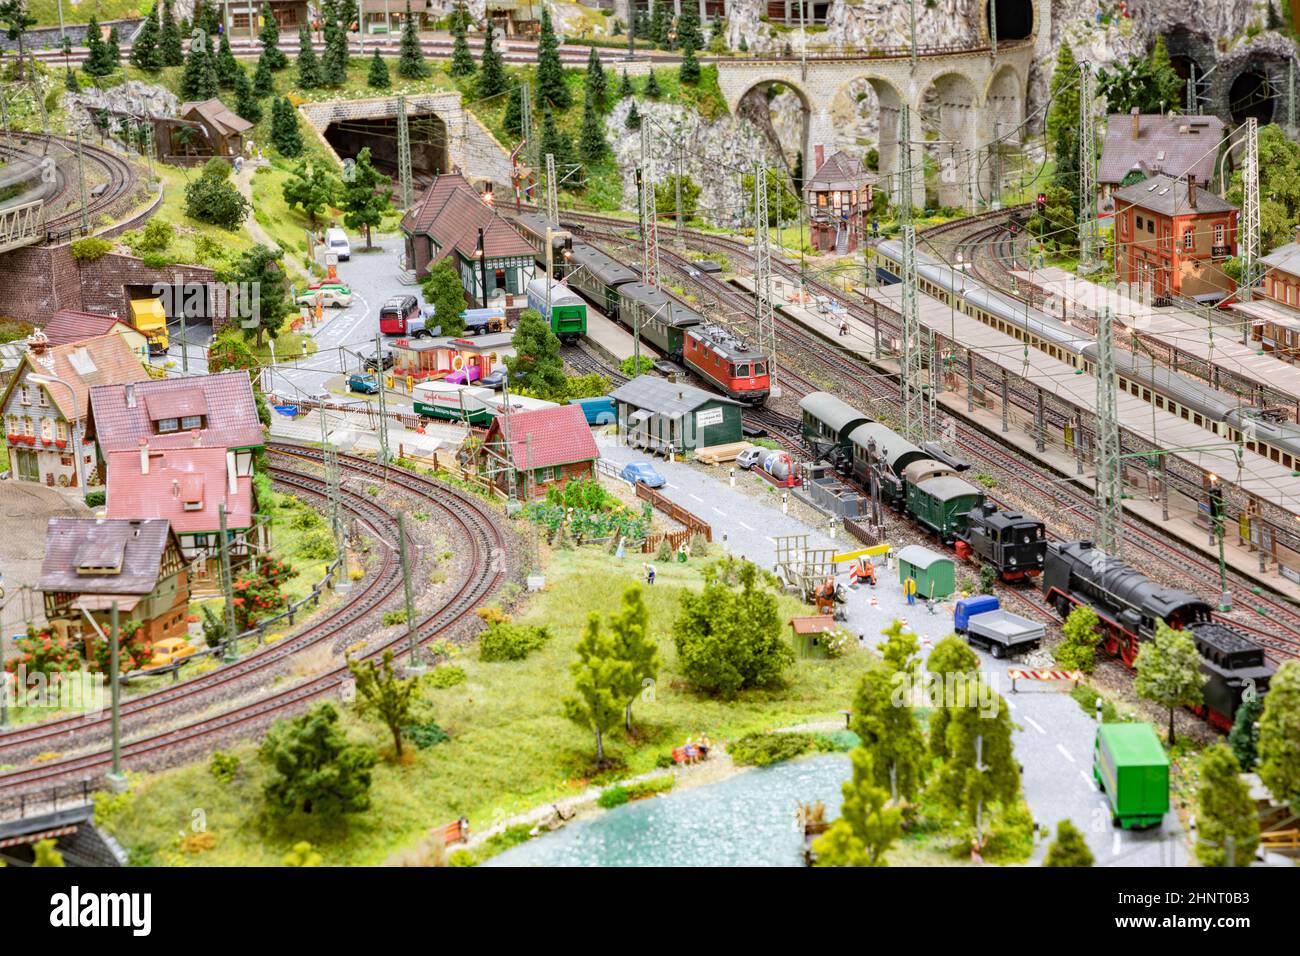 Detail der Modelleisenbahn mit Landschaft, Dörfern und fahrenden Zug Stockfoto